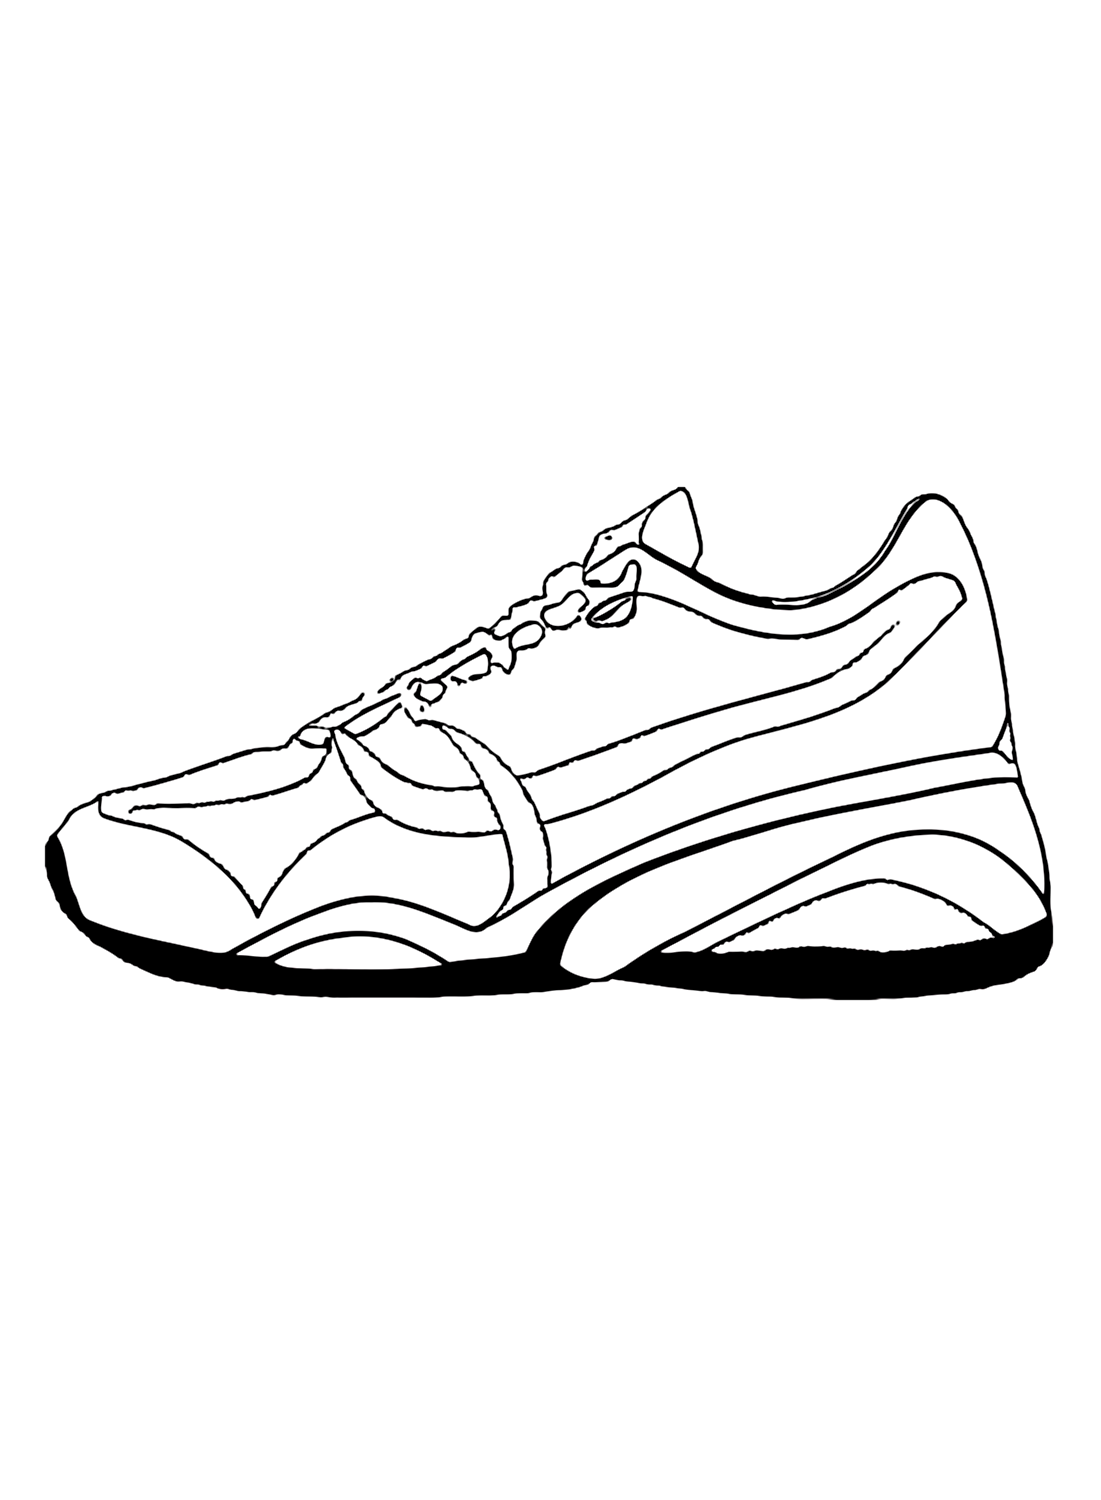 Imagem para colorir de esporte de Shoe